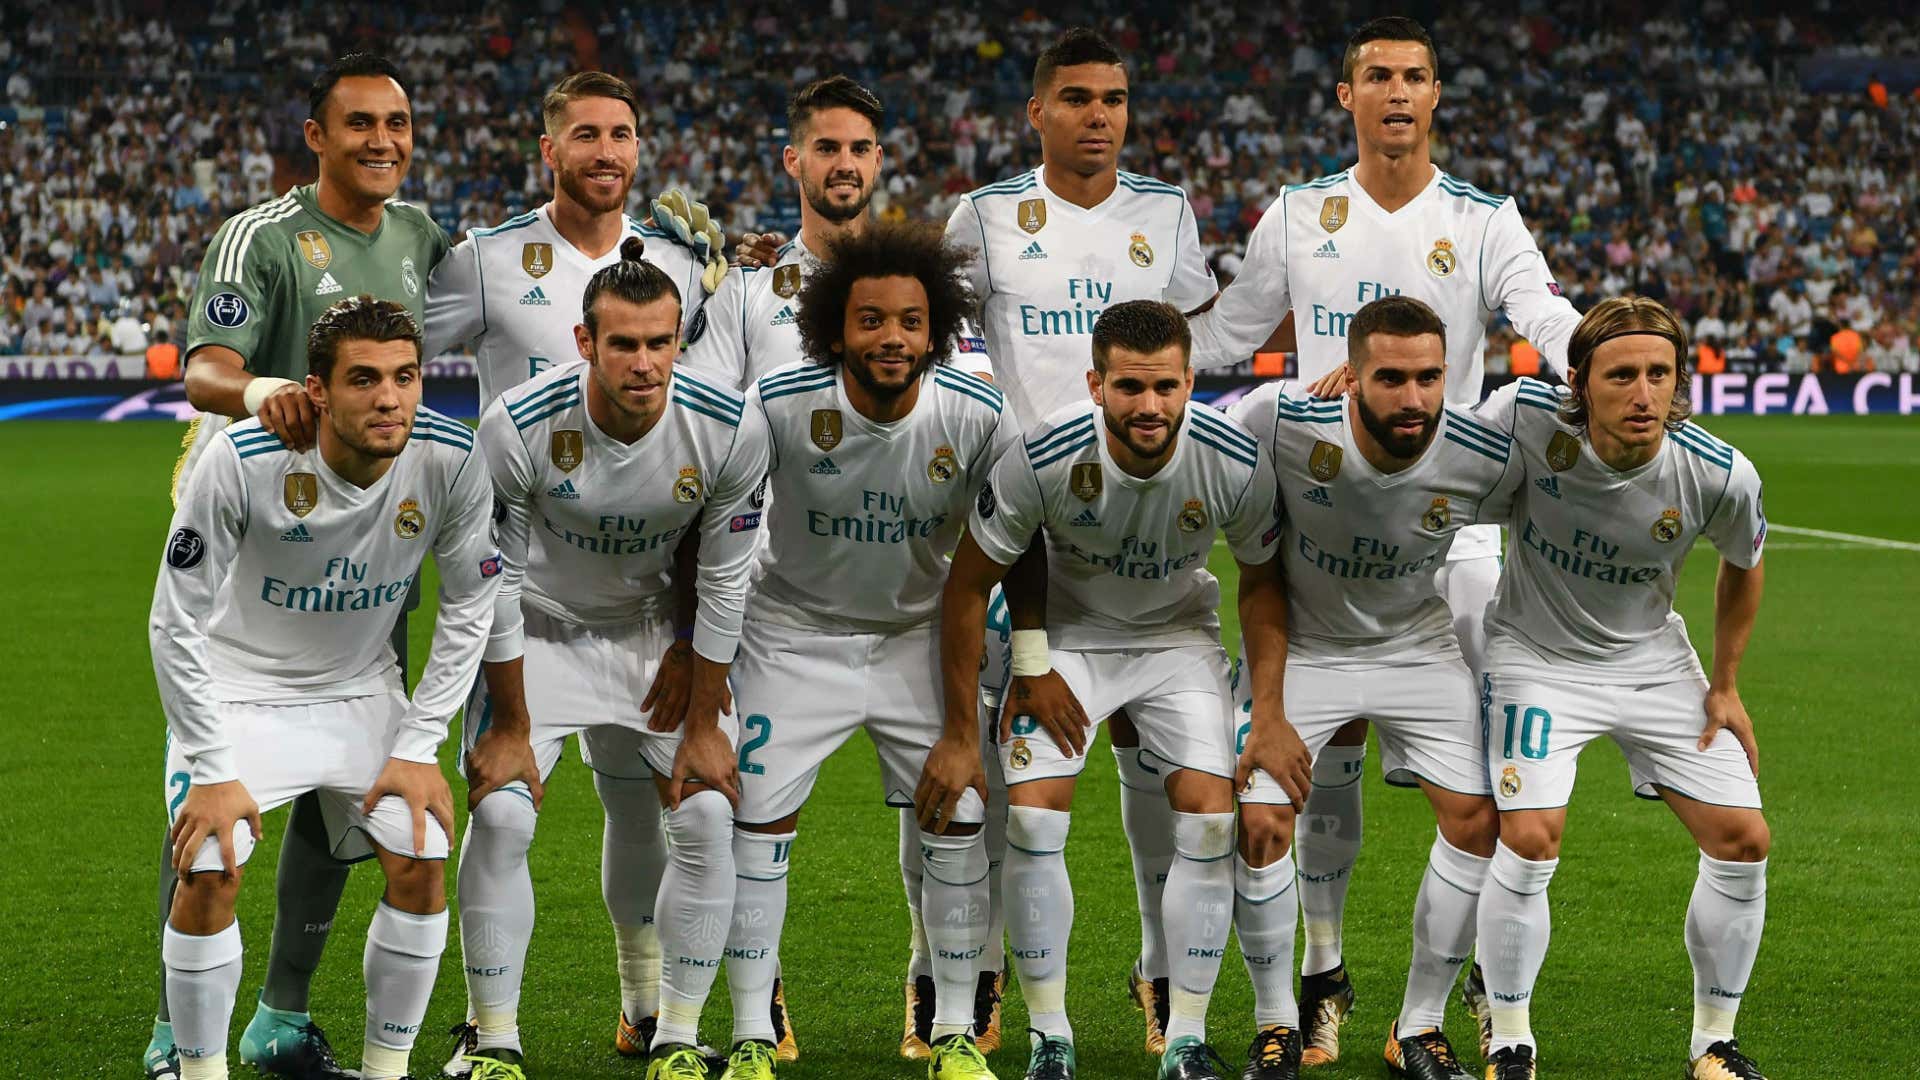 CHÙM ẢNH: CR7 đem về chiến thắng cho Real Madrid | Goal.com